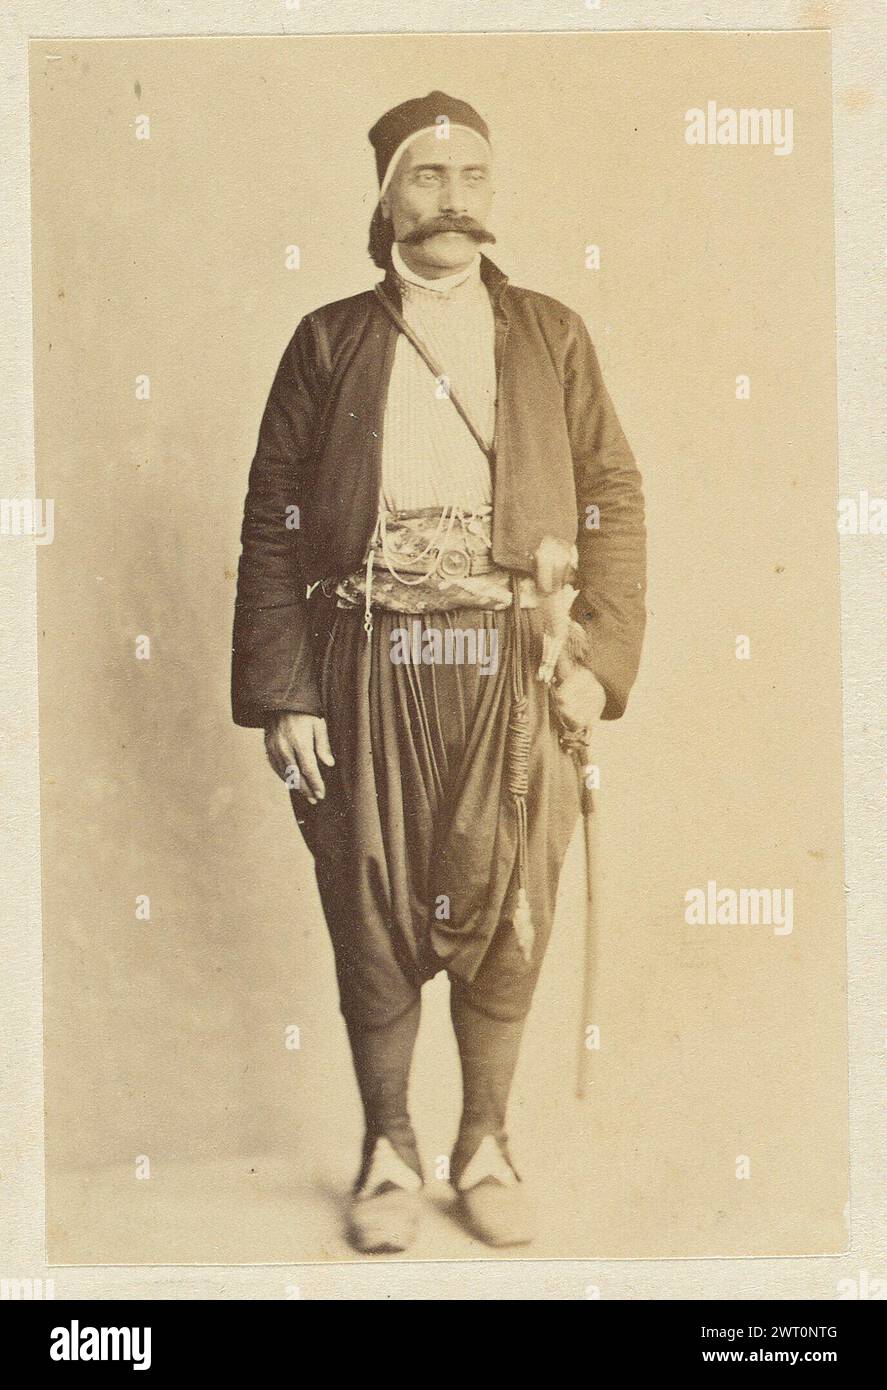 Portrait d'un homme. Wilhelm Hammerschmidt, photographe (allemand, né en Prusse, mort en 1869) années 1860 Un homme pose dans un espace intérieur devant un mur blanc. L'homme a une moustache et porte une épée à la ceinture, un pantalon sombre et ample et une veste noire. Banque D'Images